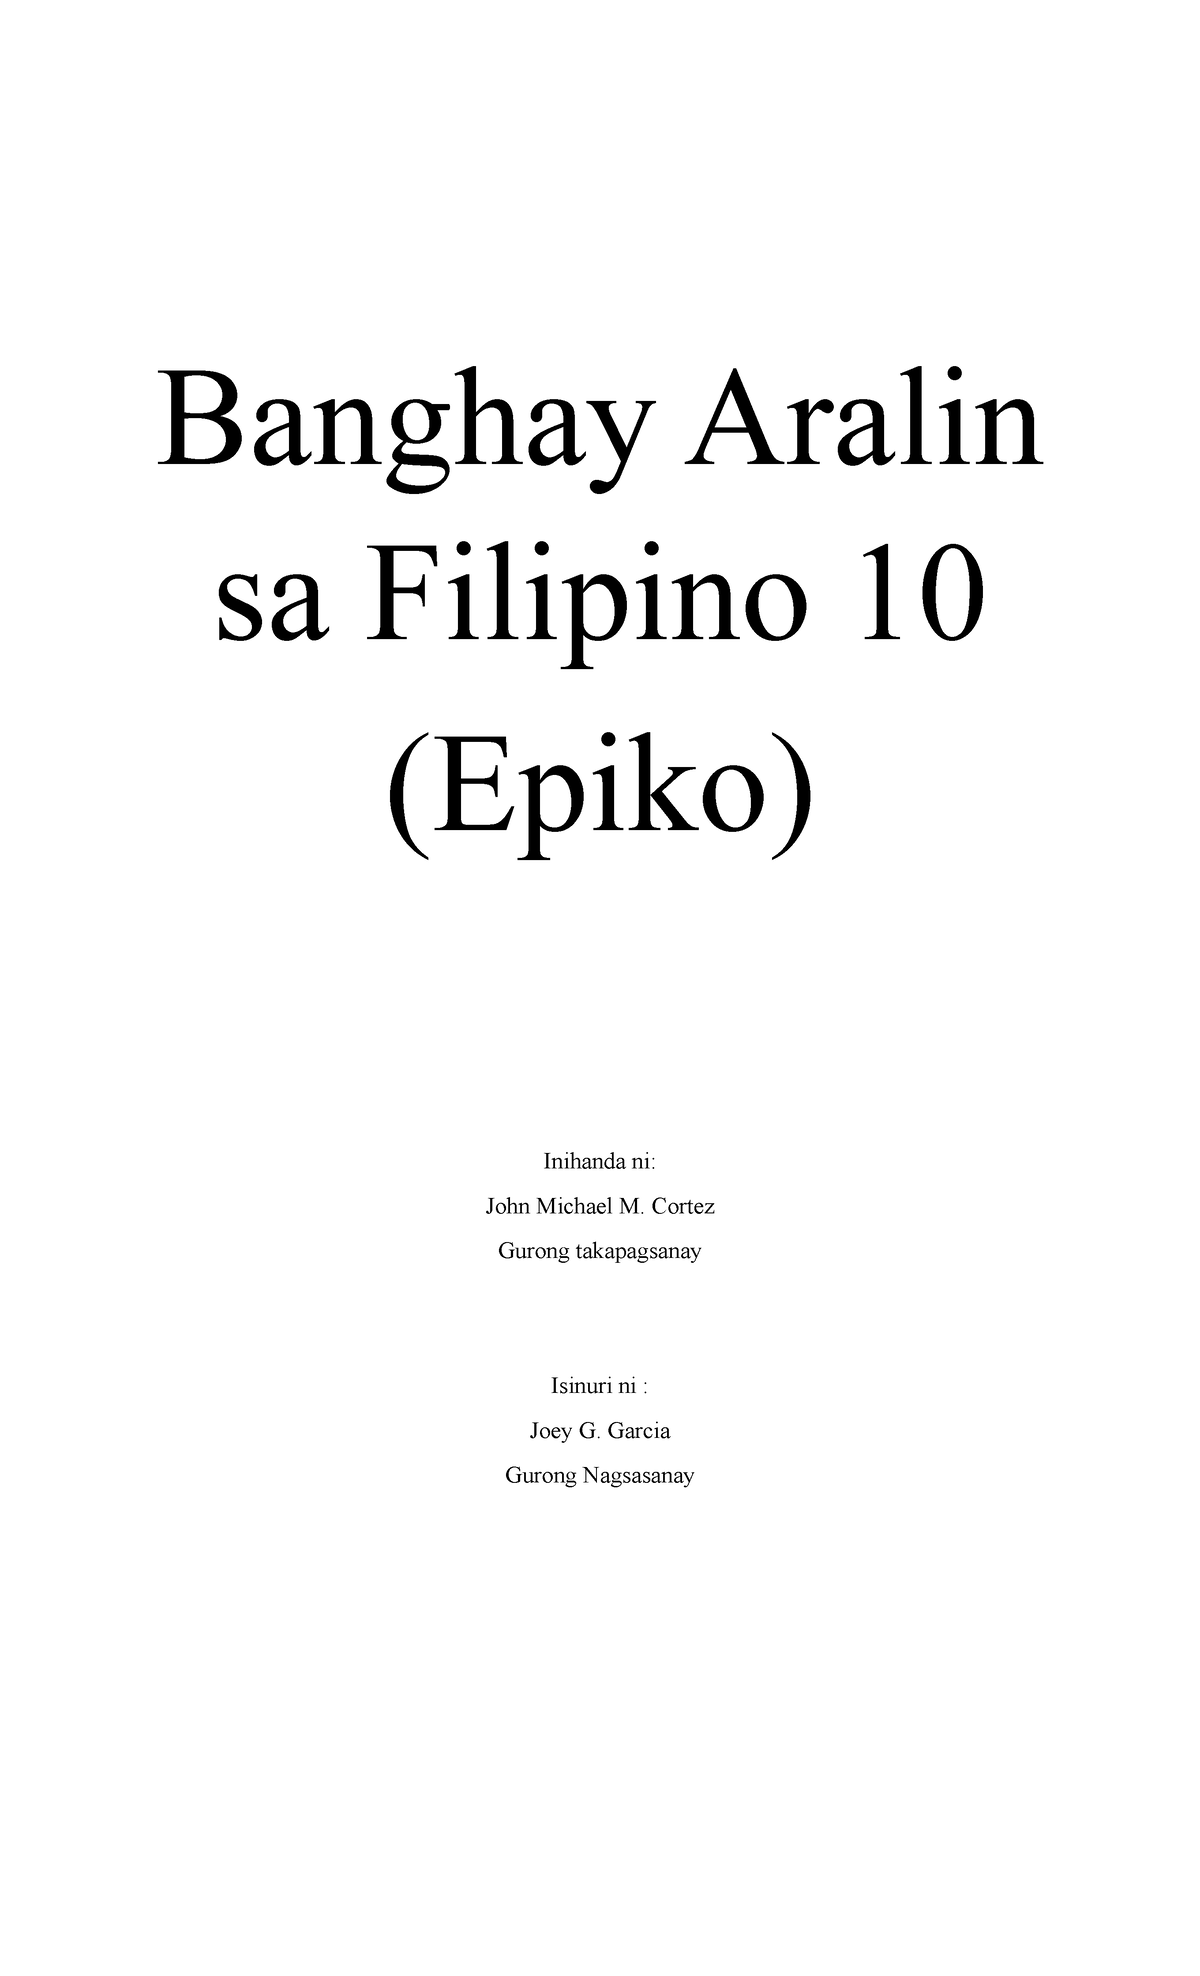 Banghay Aralin Sa Filipino 10 Epiko John Micahel Cortez Banghay Aralin Sa Filipino 10 Epiko 2879